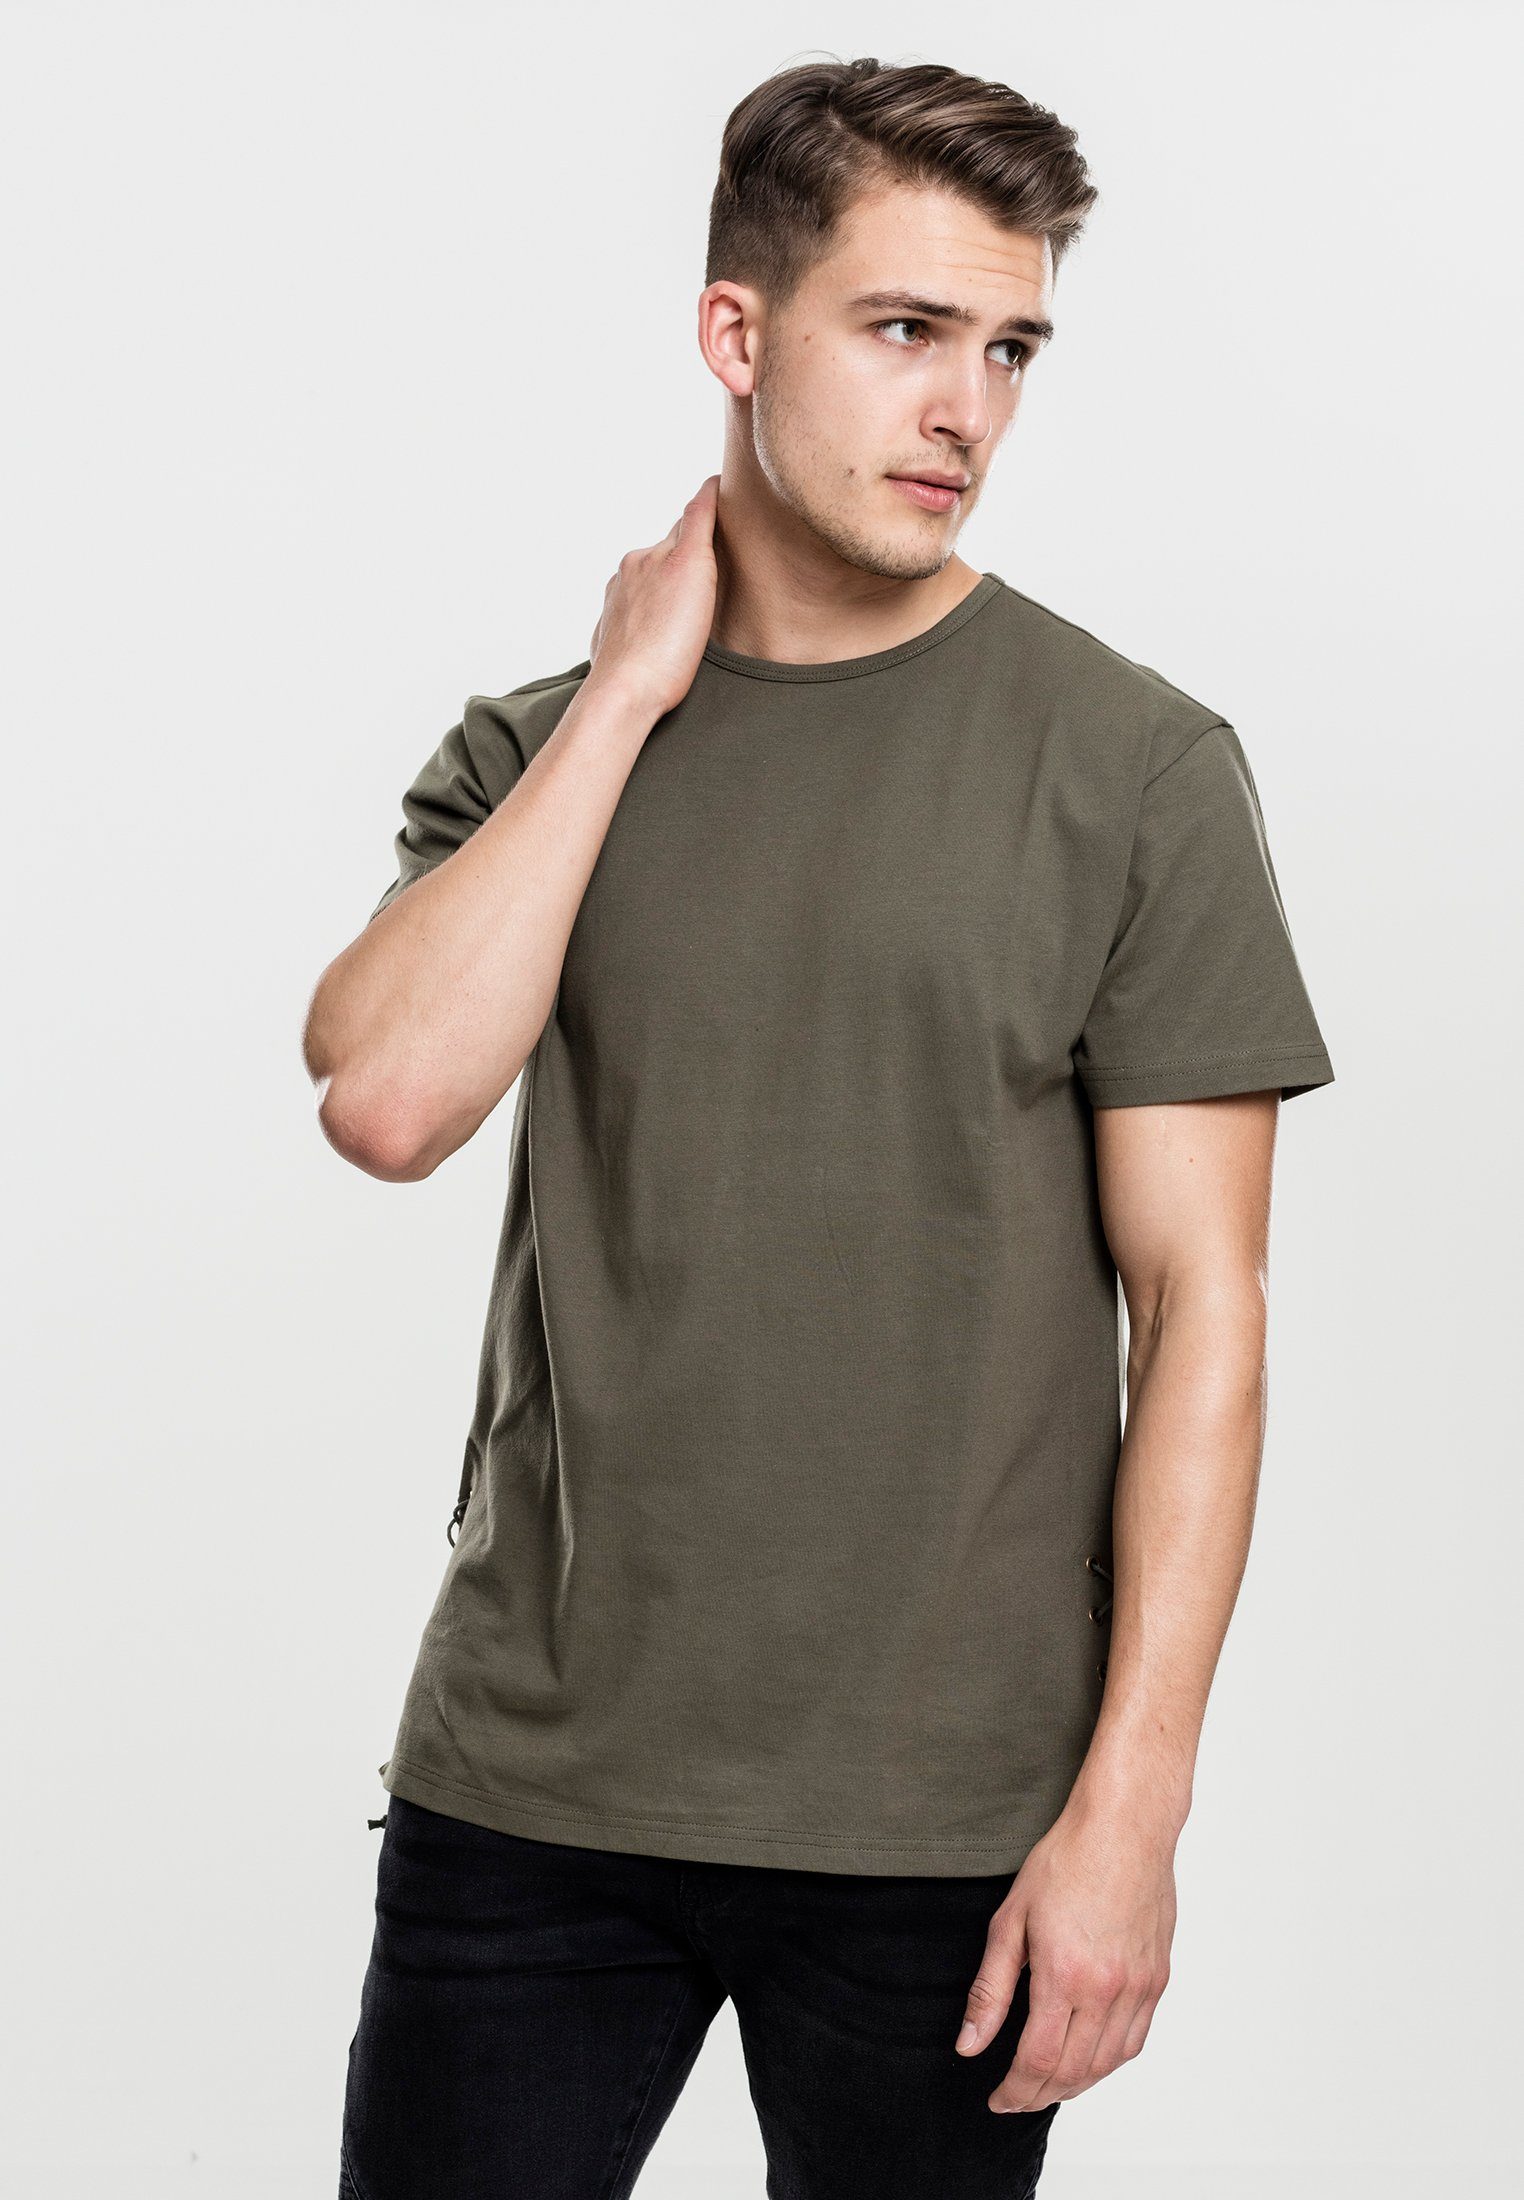 URBAN CLASSICS T-Shirt TB1777 olive Lace Up Long